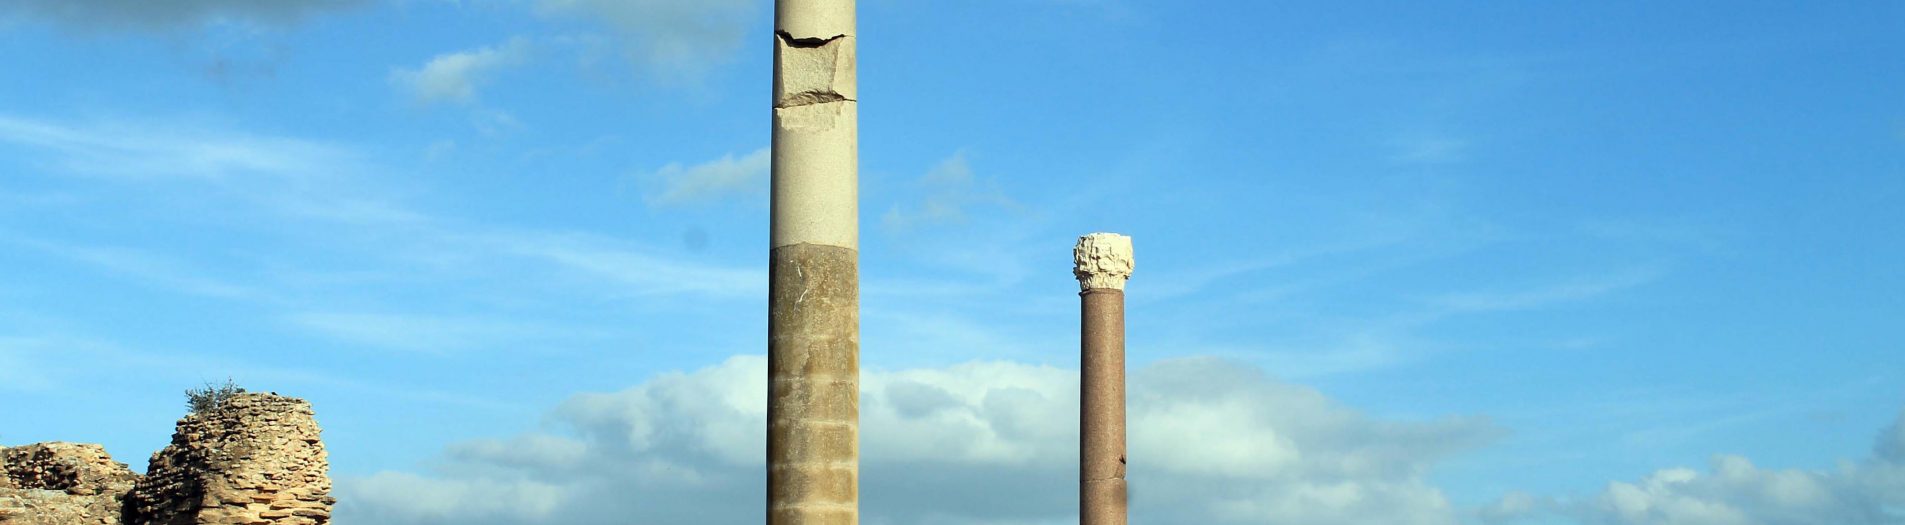 Les monuments des eaux romains en Tunisie